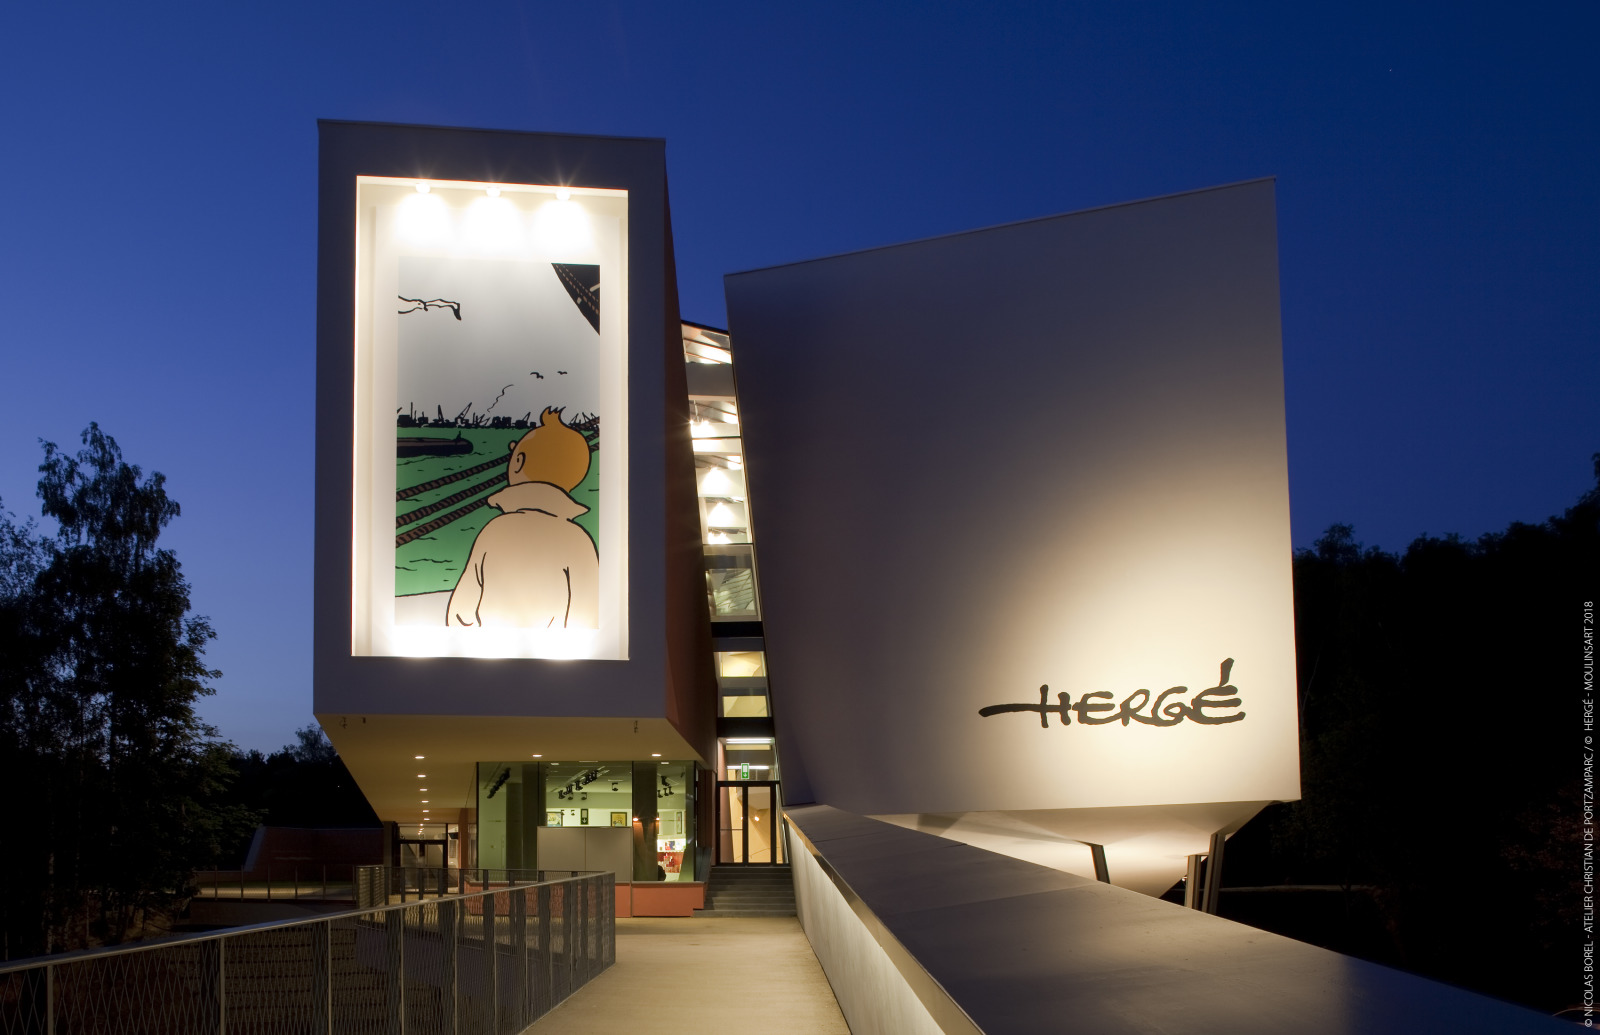 Vue extérieure nocturne du bâtiment du musée Hergé à Louvain-La-Neuve